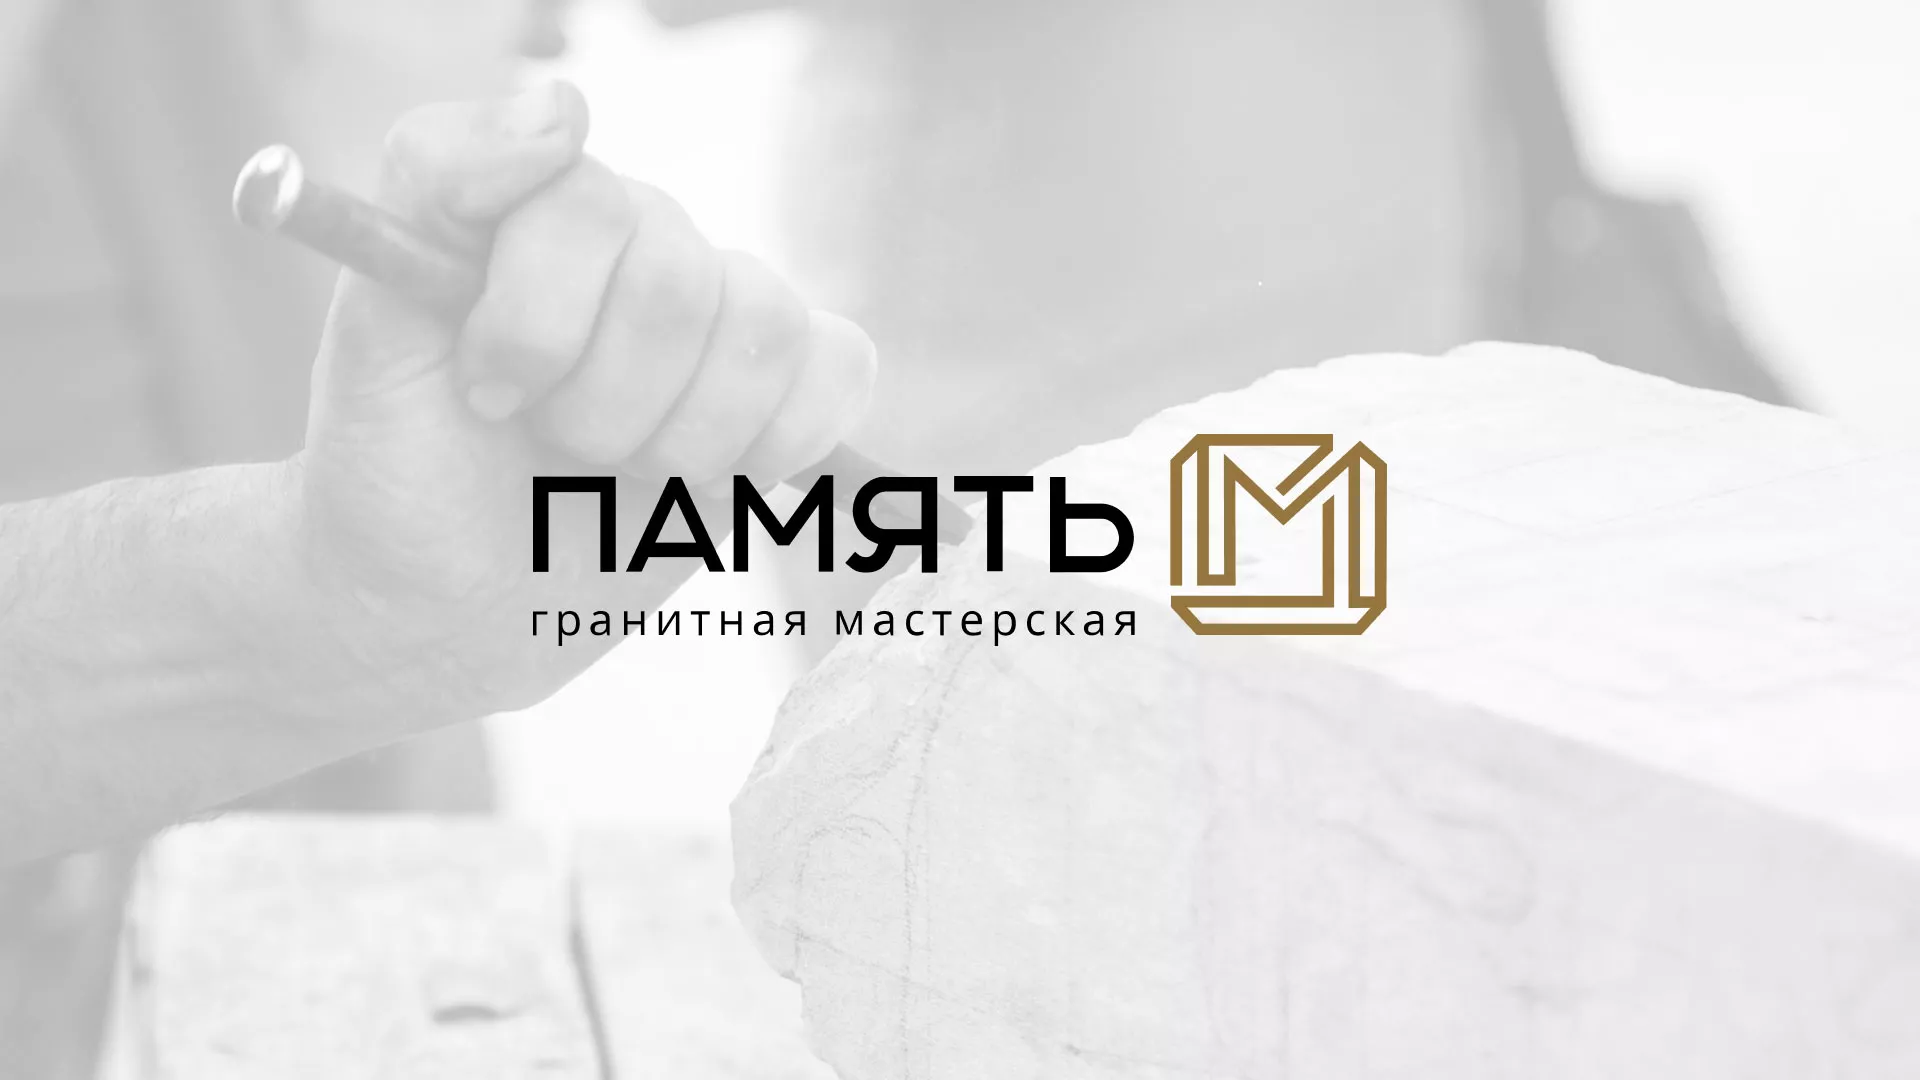 Разработка логотипа и сайта компании «Память-М» в Шарье